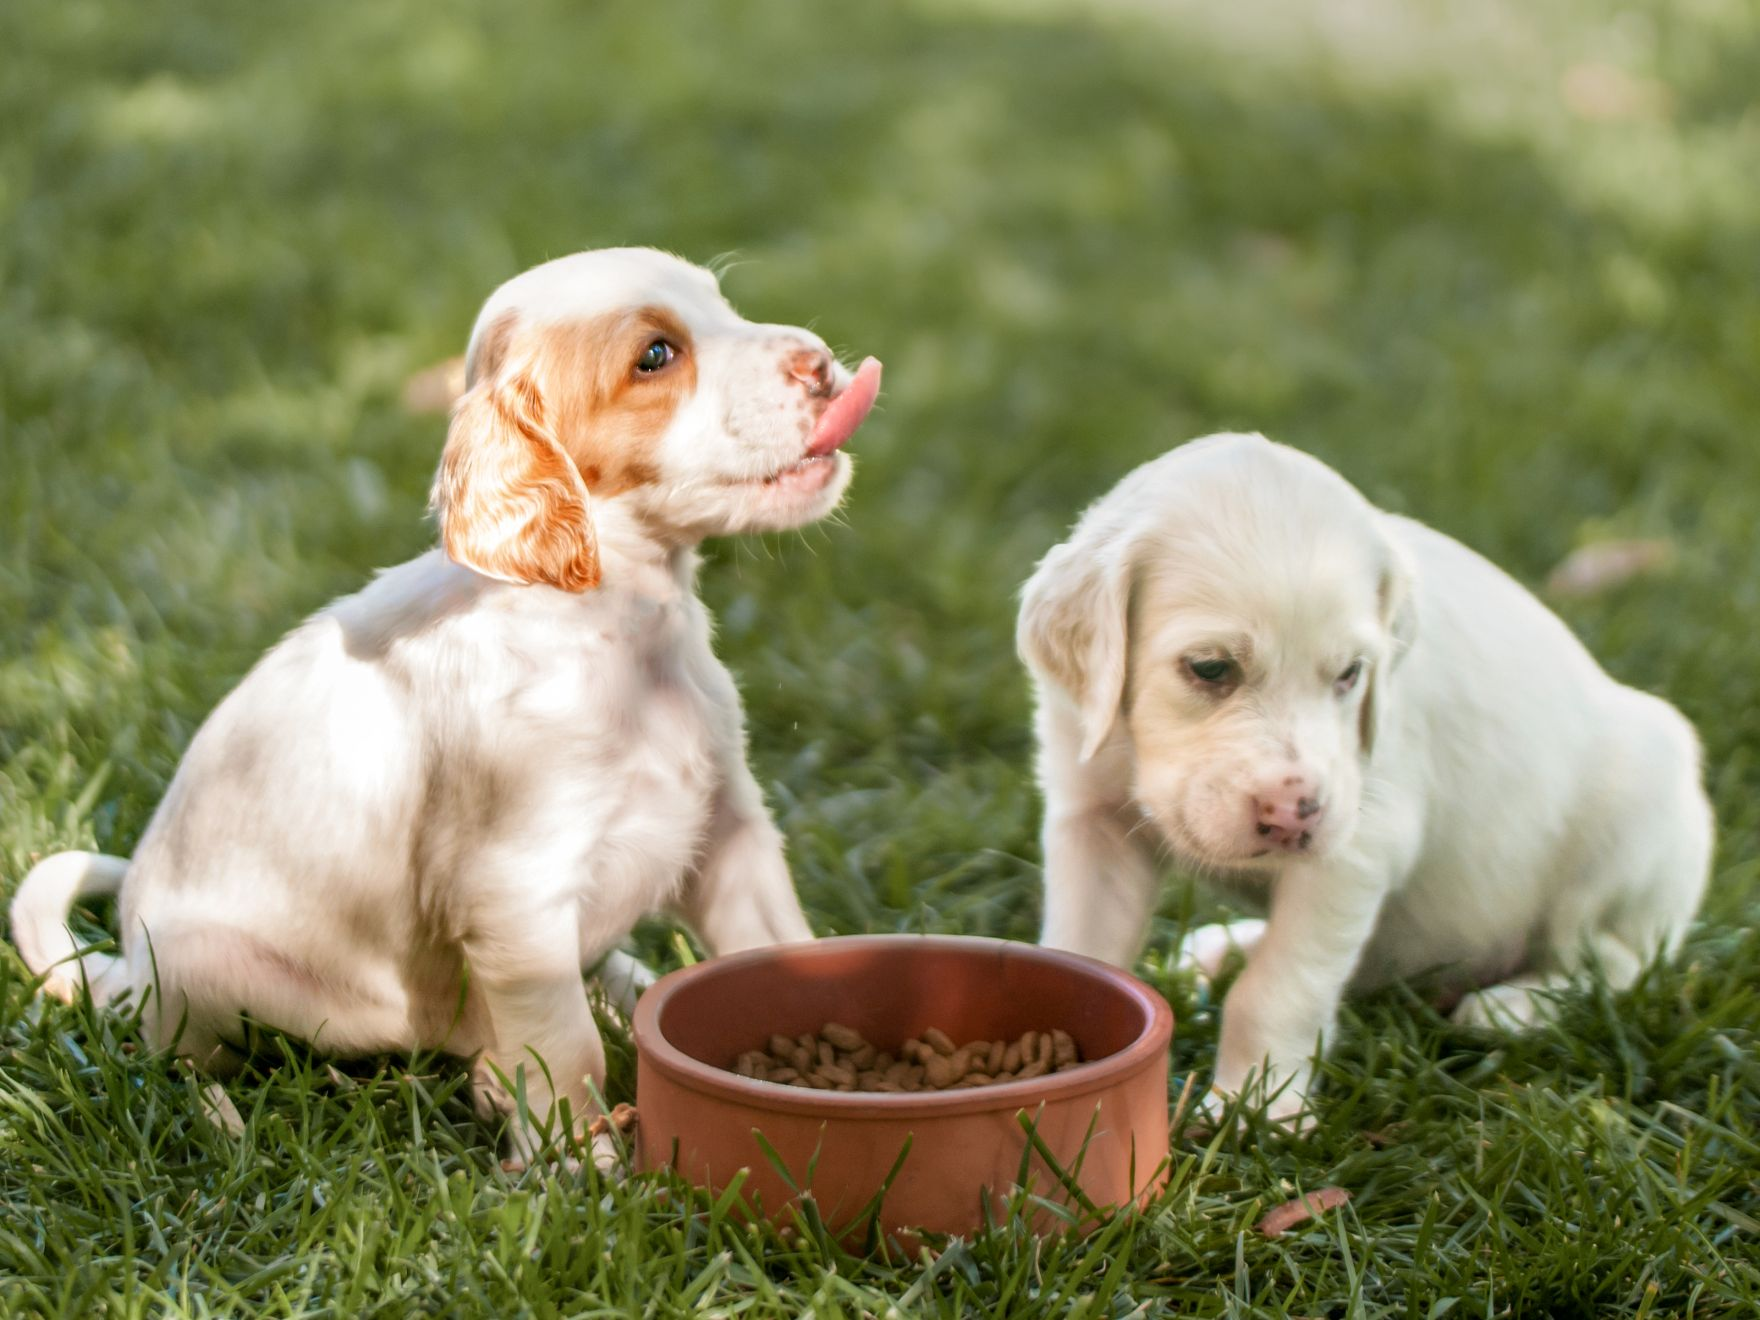 Twee puppies zitten naast een voedingsbak in het gras